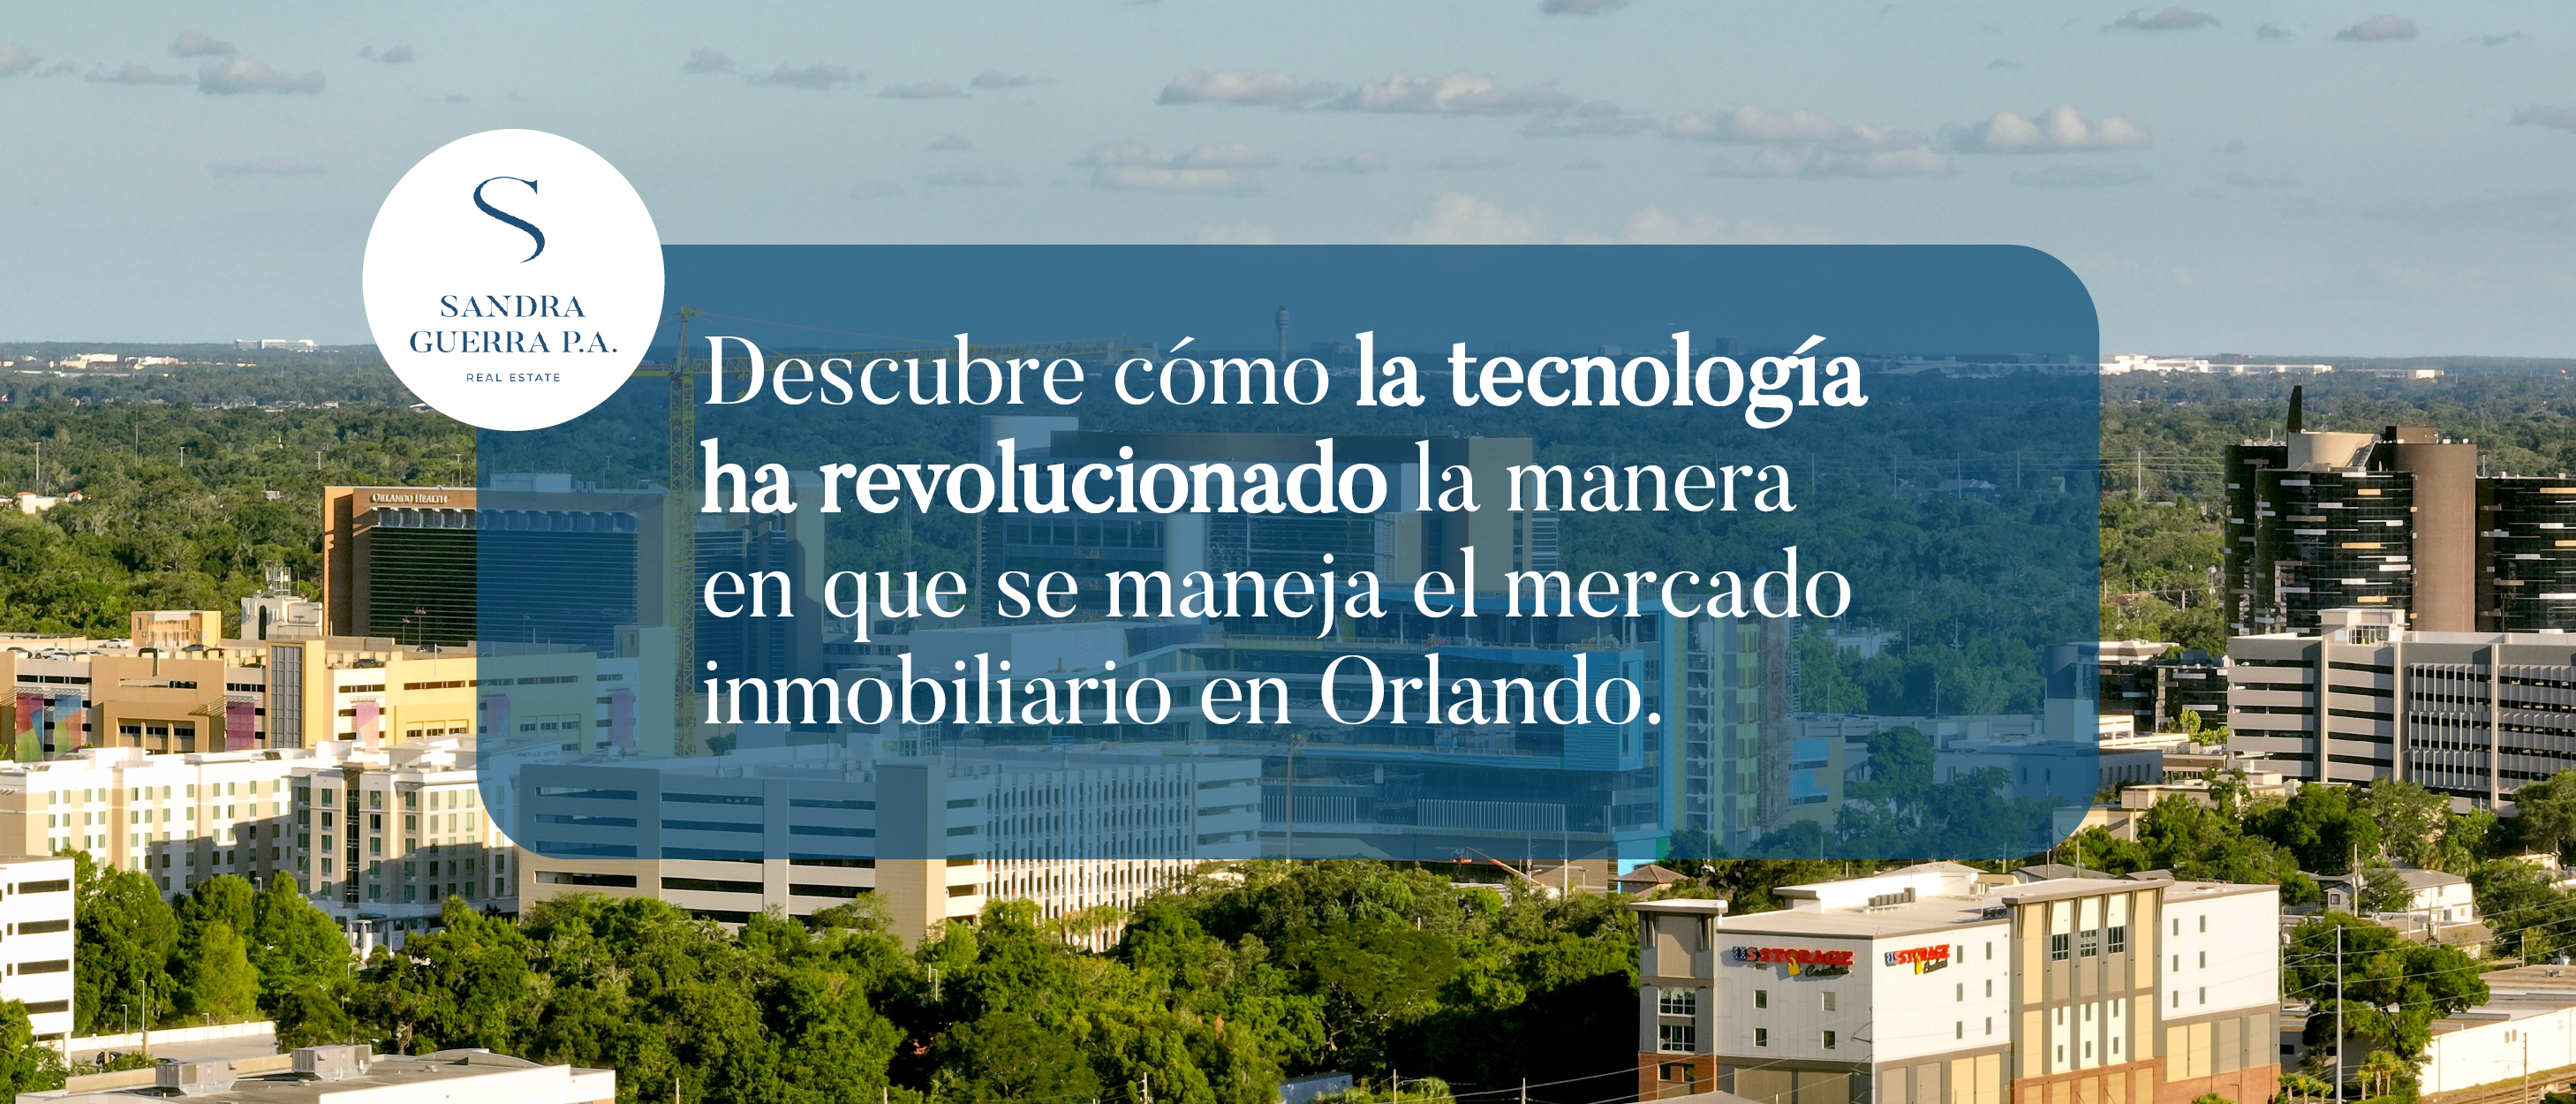 Descubre cómo la tecnología ha revolucionado la manera en que se maneja el mercado inmobiliario en Orlando